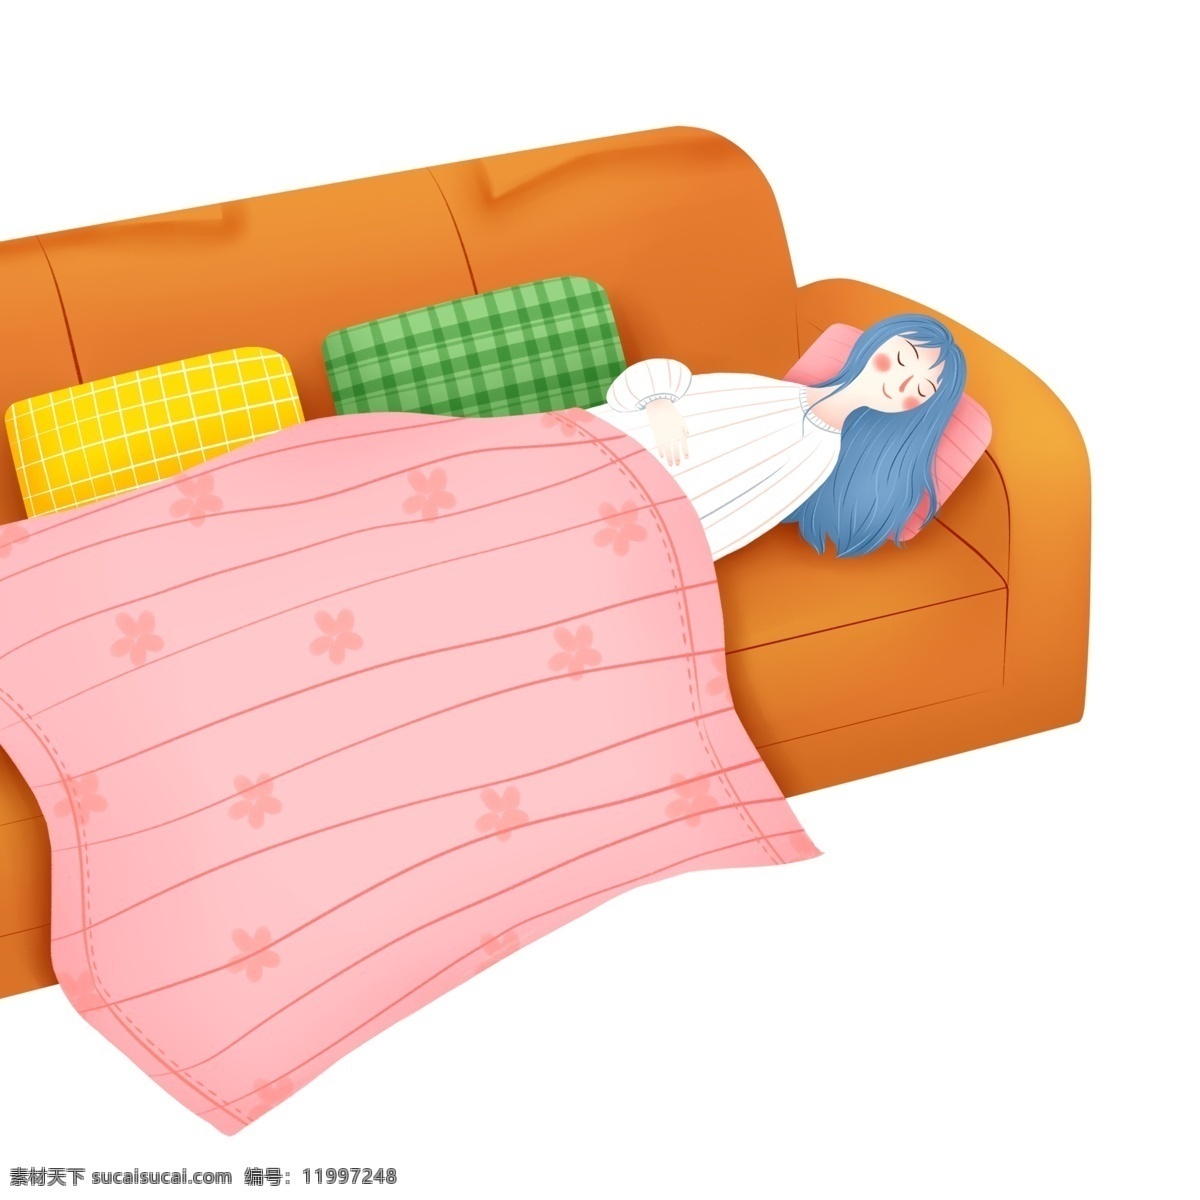 彩绘 小清 新沙 发 上 盖 毯子 睡觉 女孩 小清新 沙发 插画 休息 靠枕